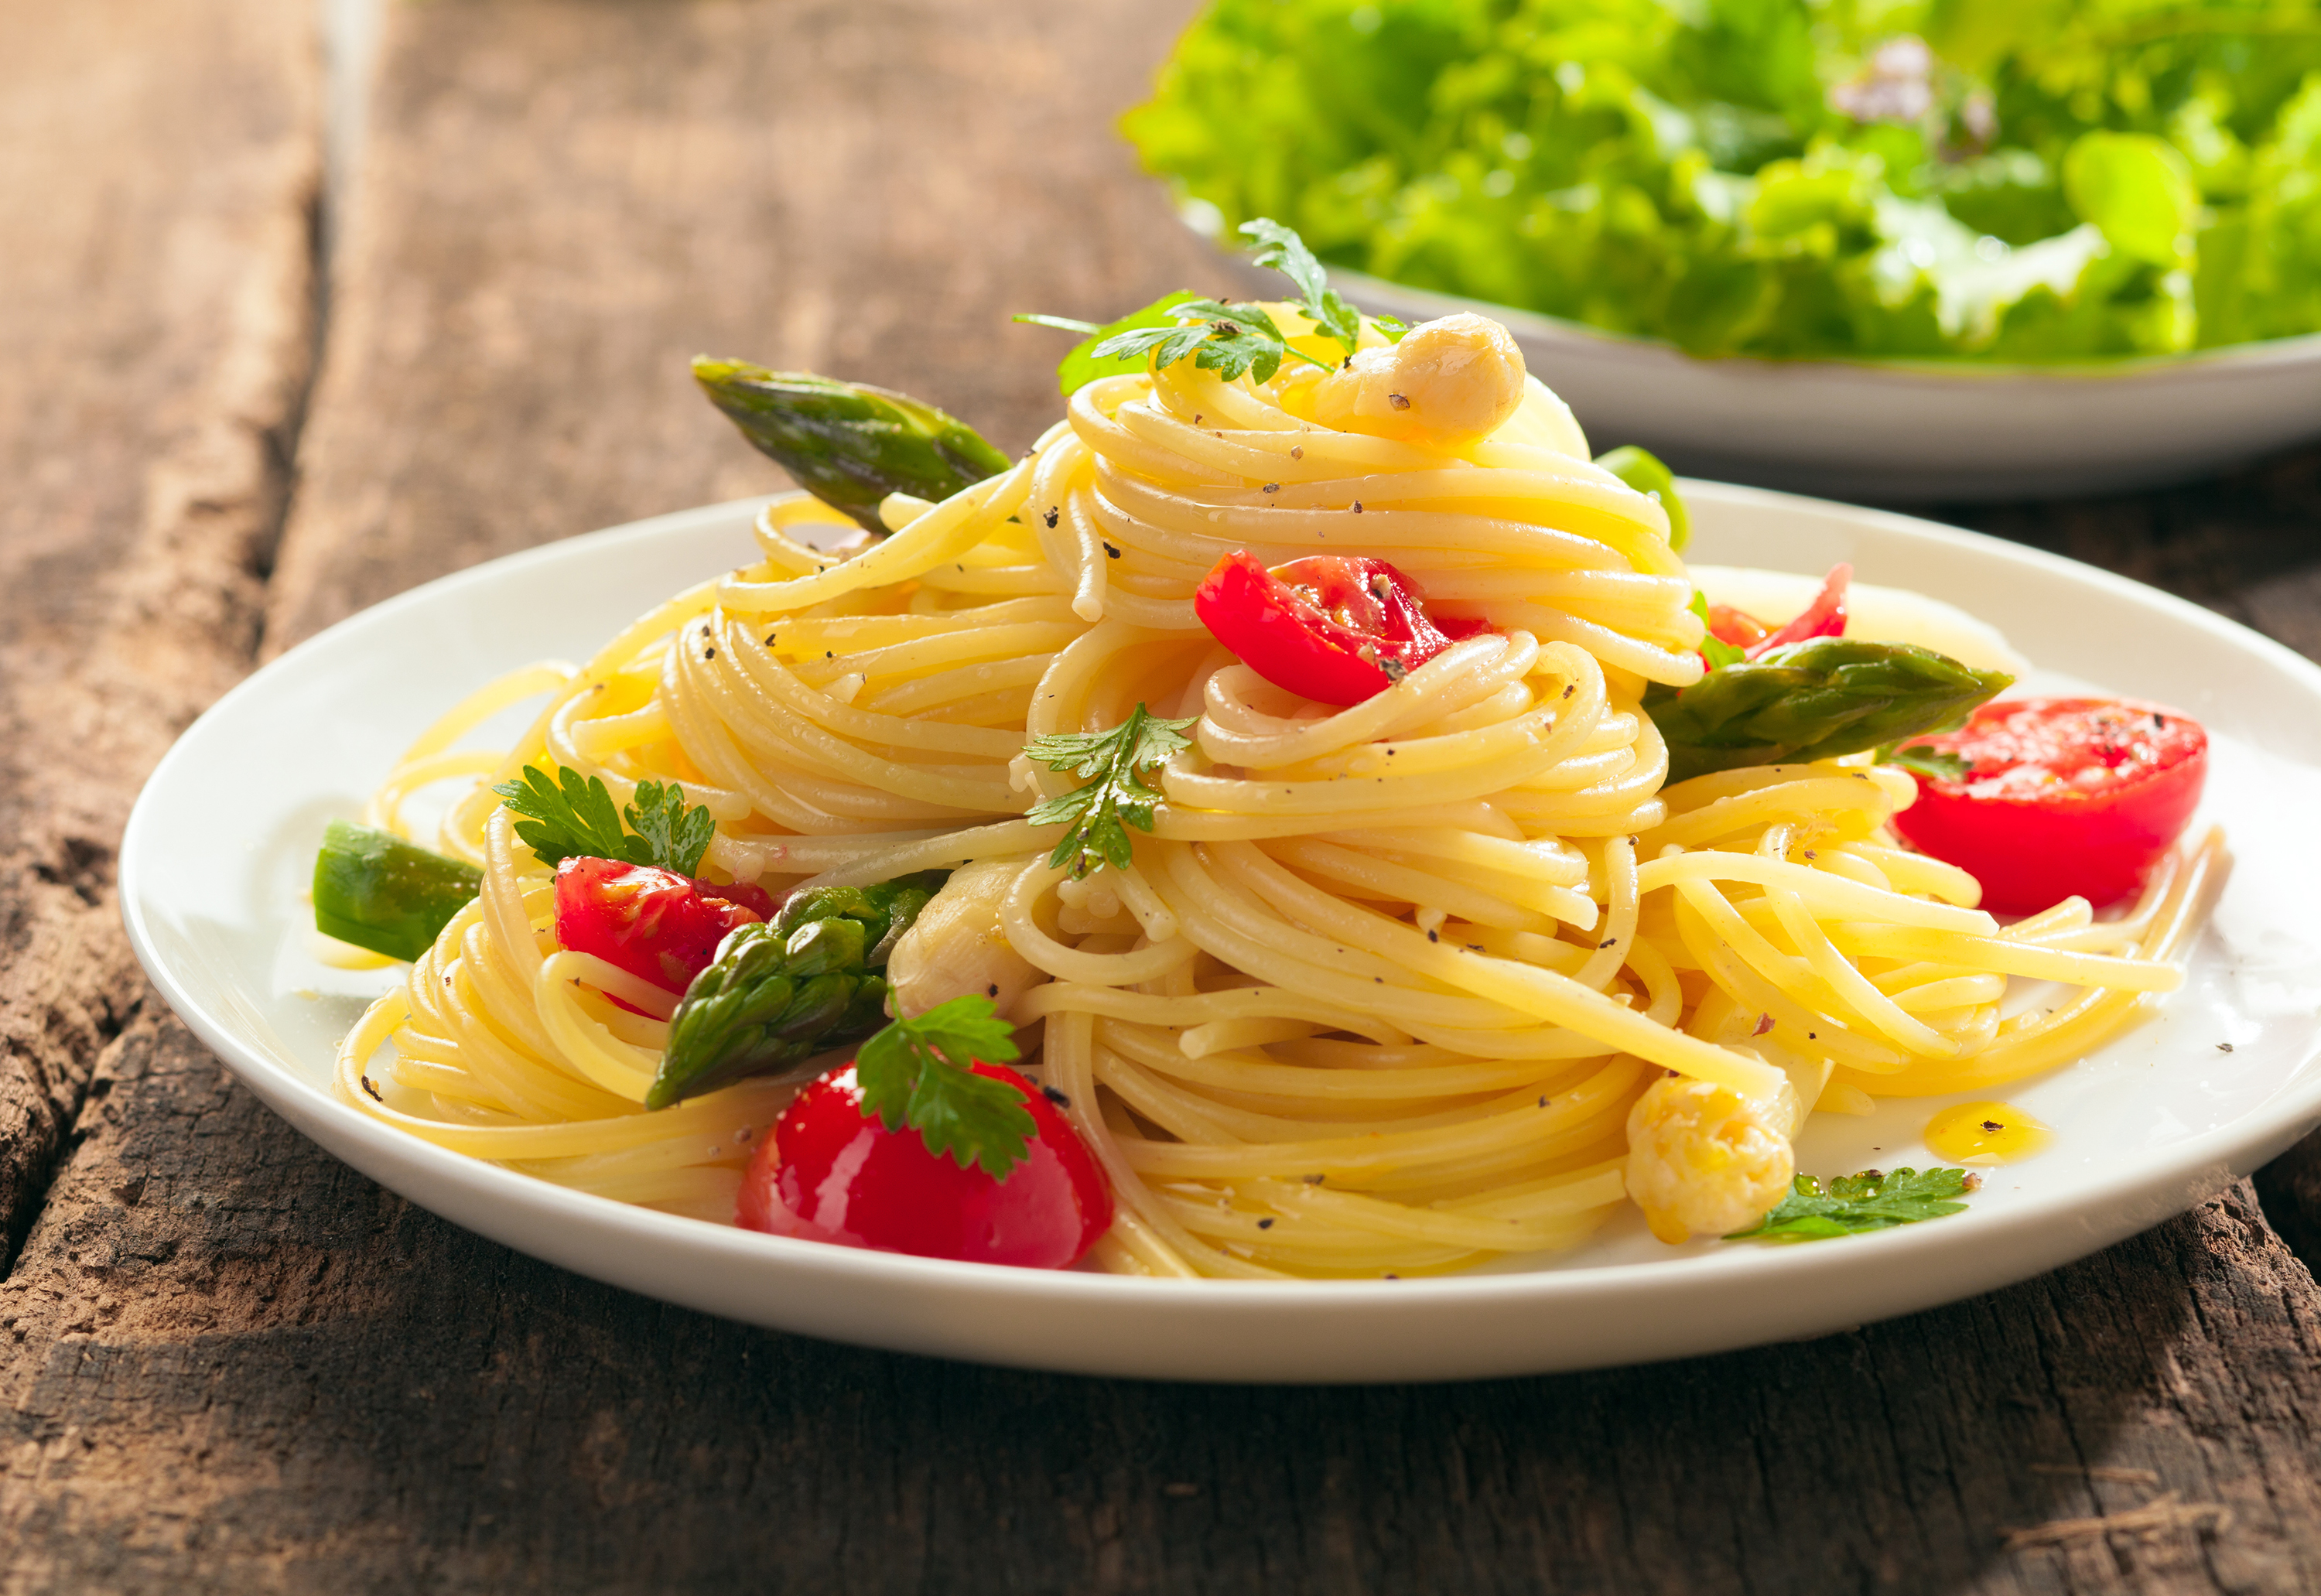 Как выглядит спагетти. Спагетти. Макароны в тарелке. Итальянская паста. Тарелка спагетти.